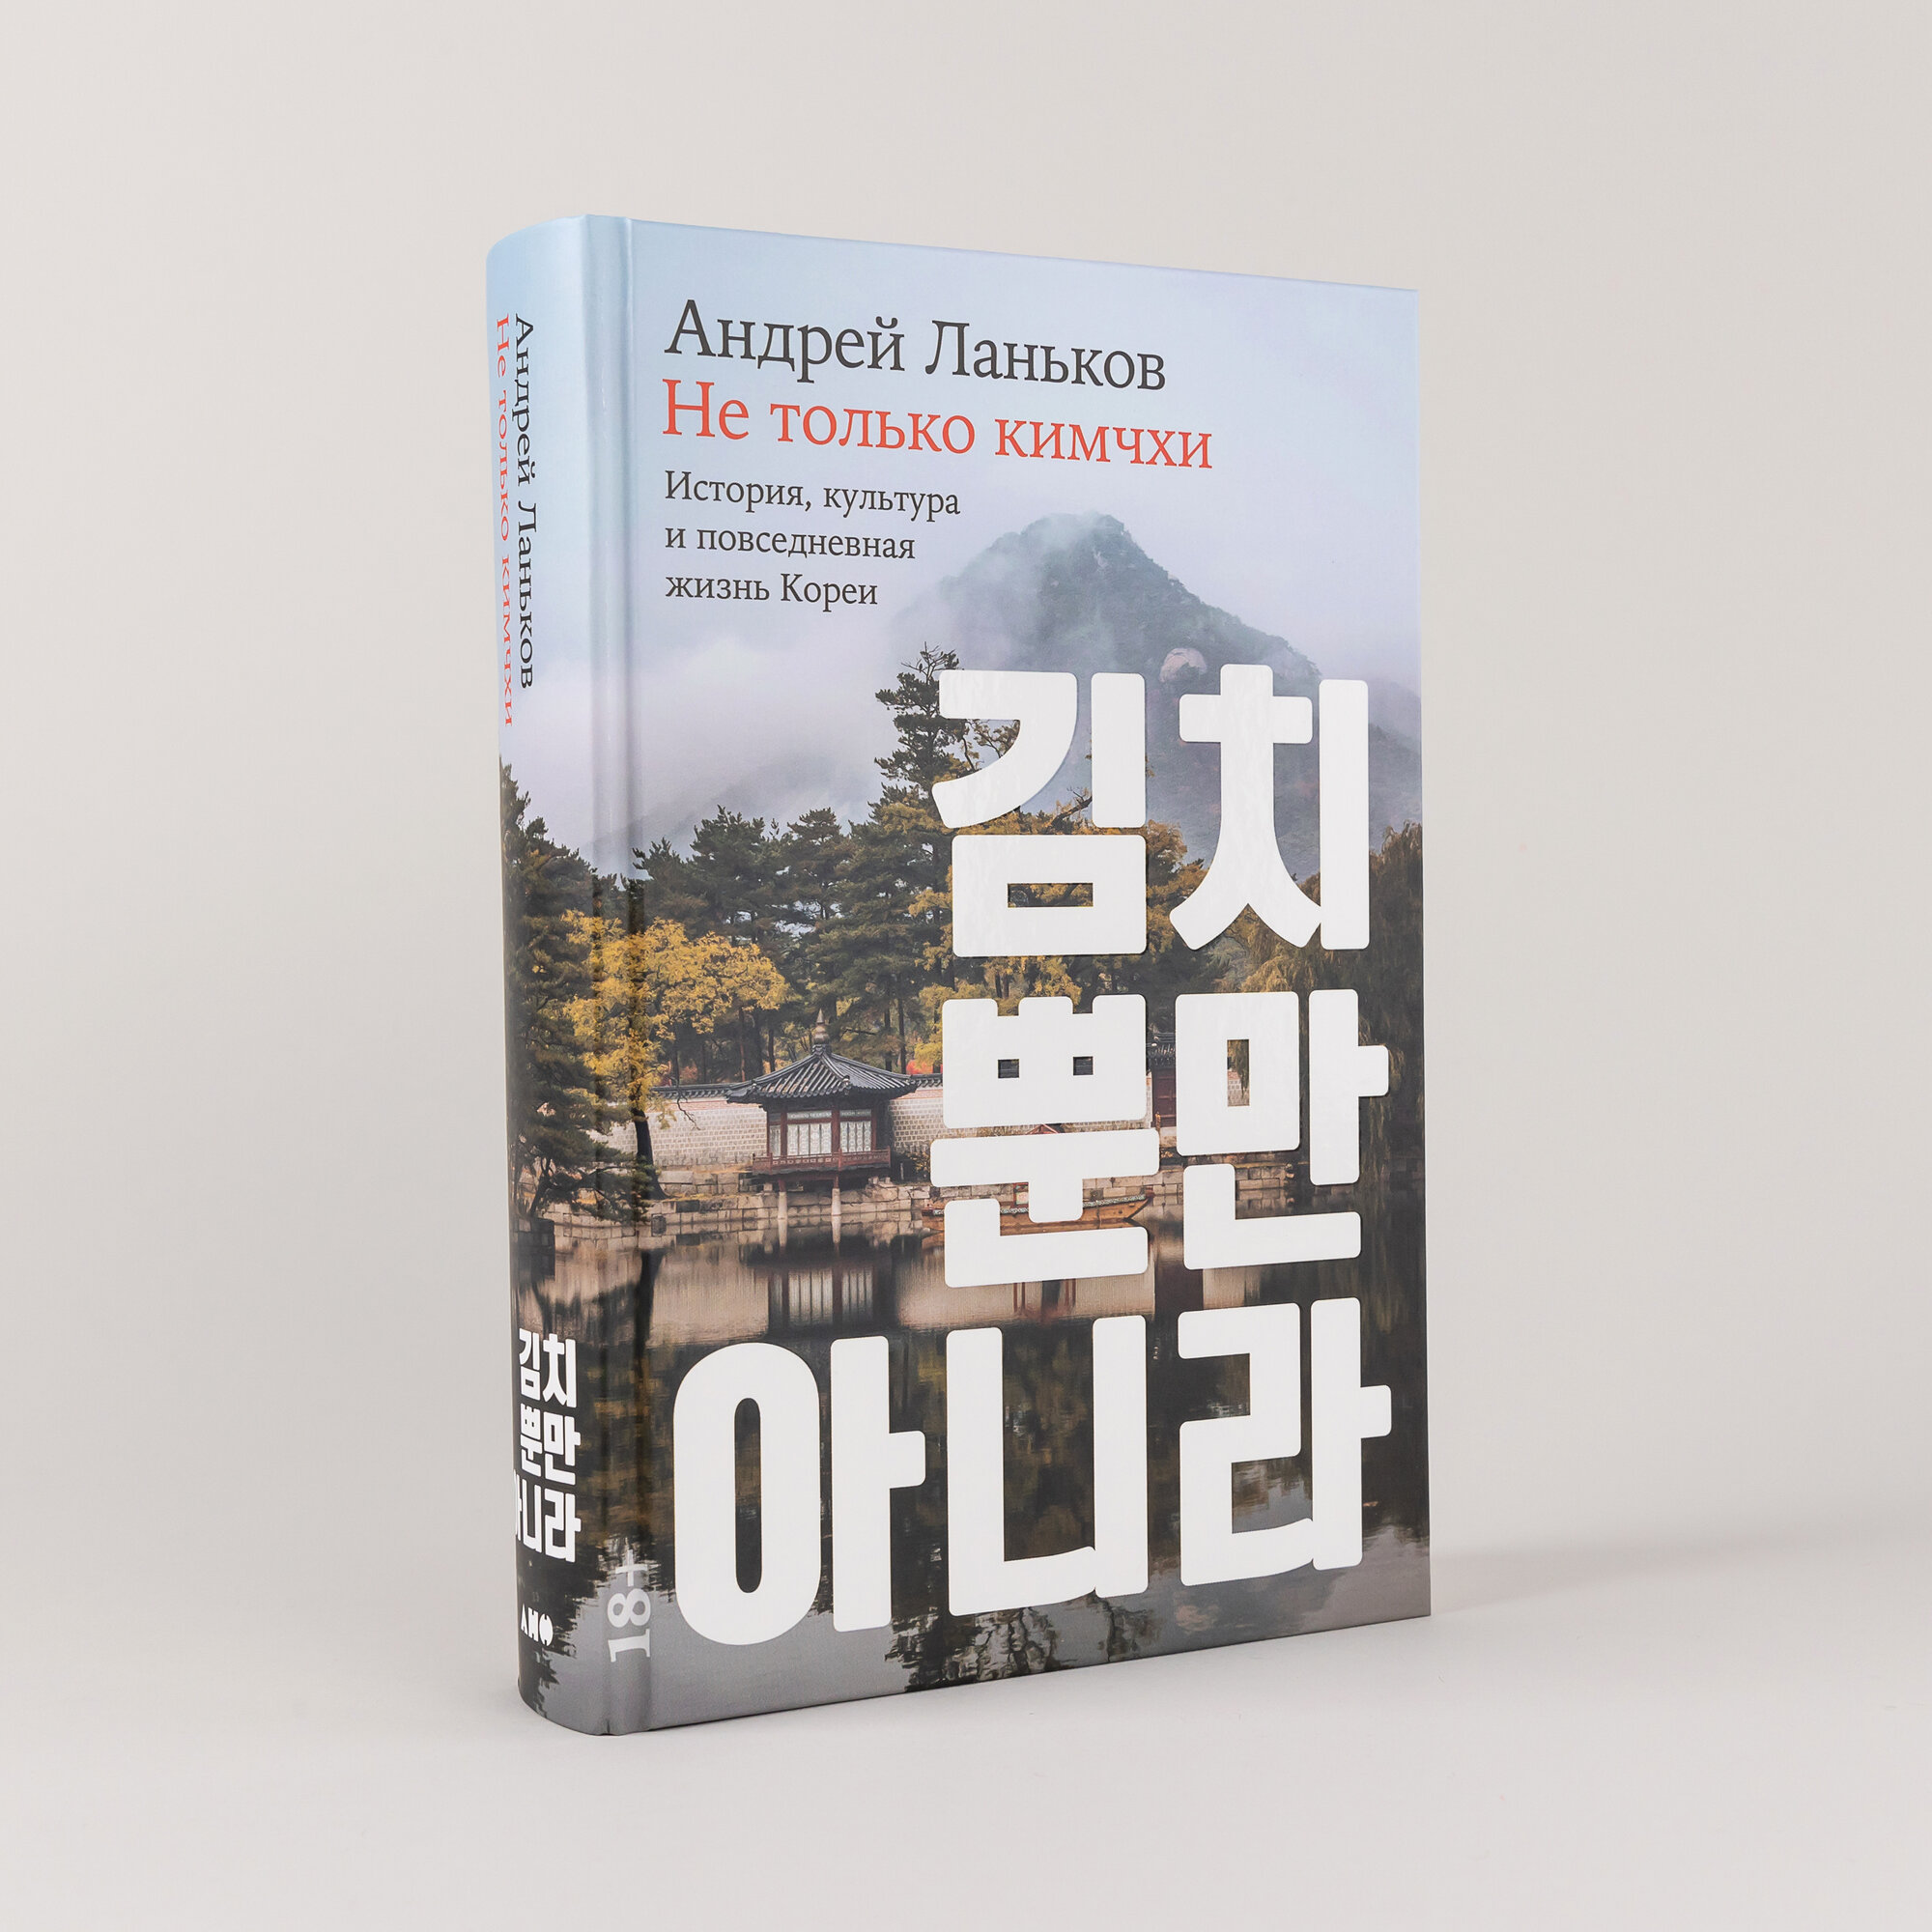 Не только кимчхи: История, культура и повседневная жизнь Кореи